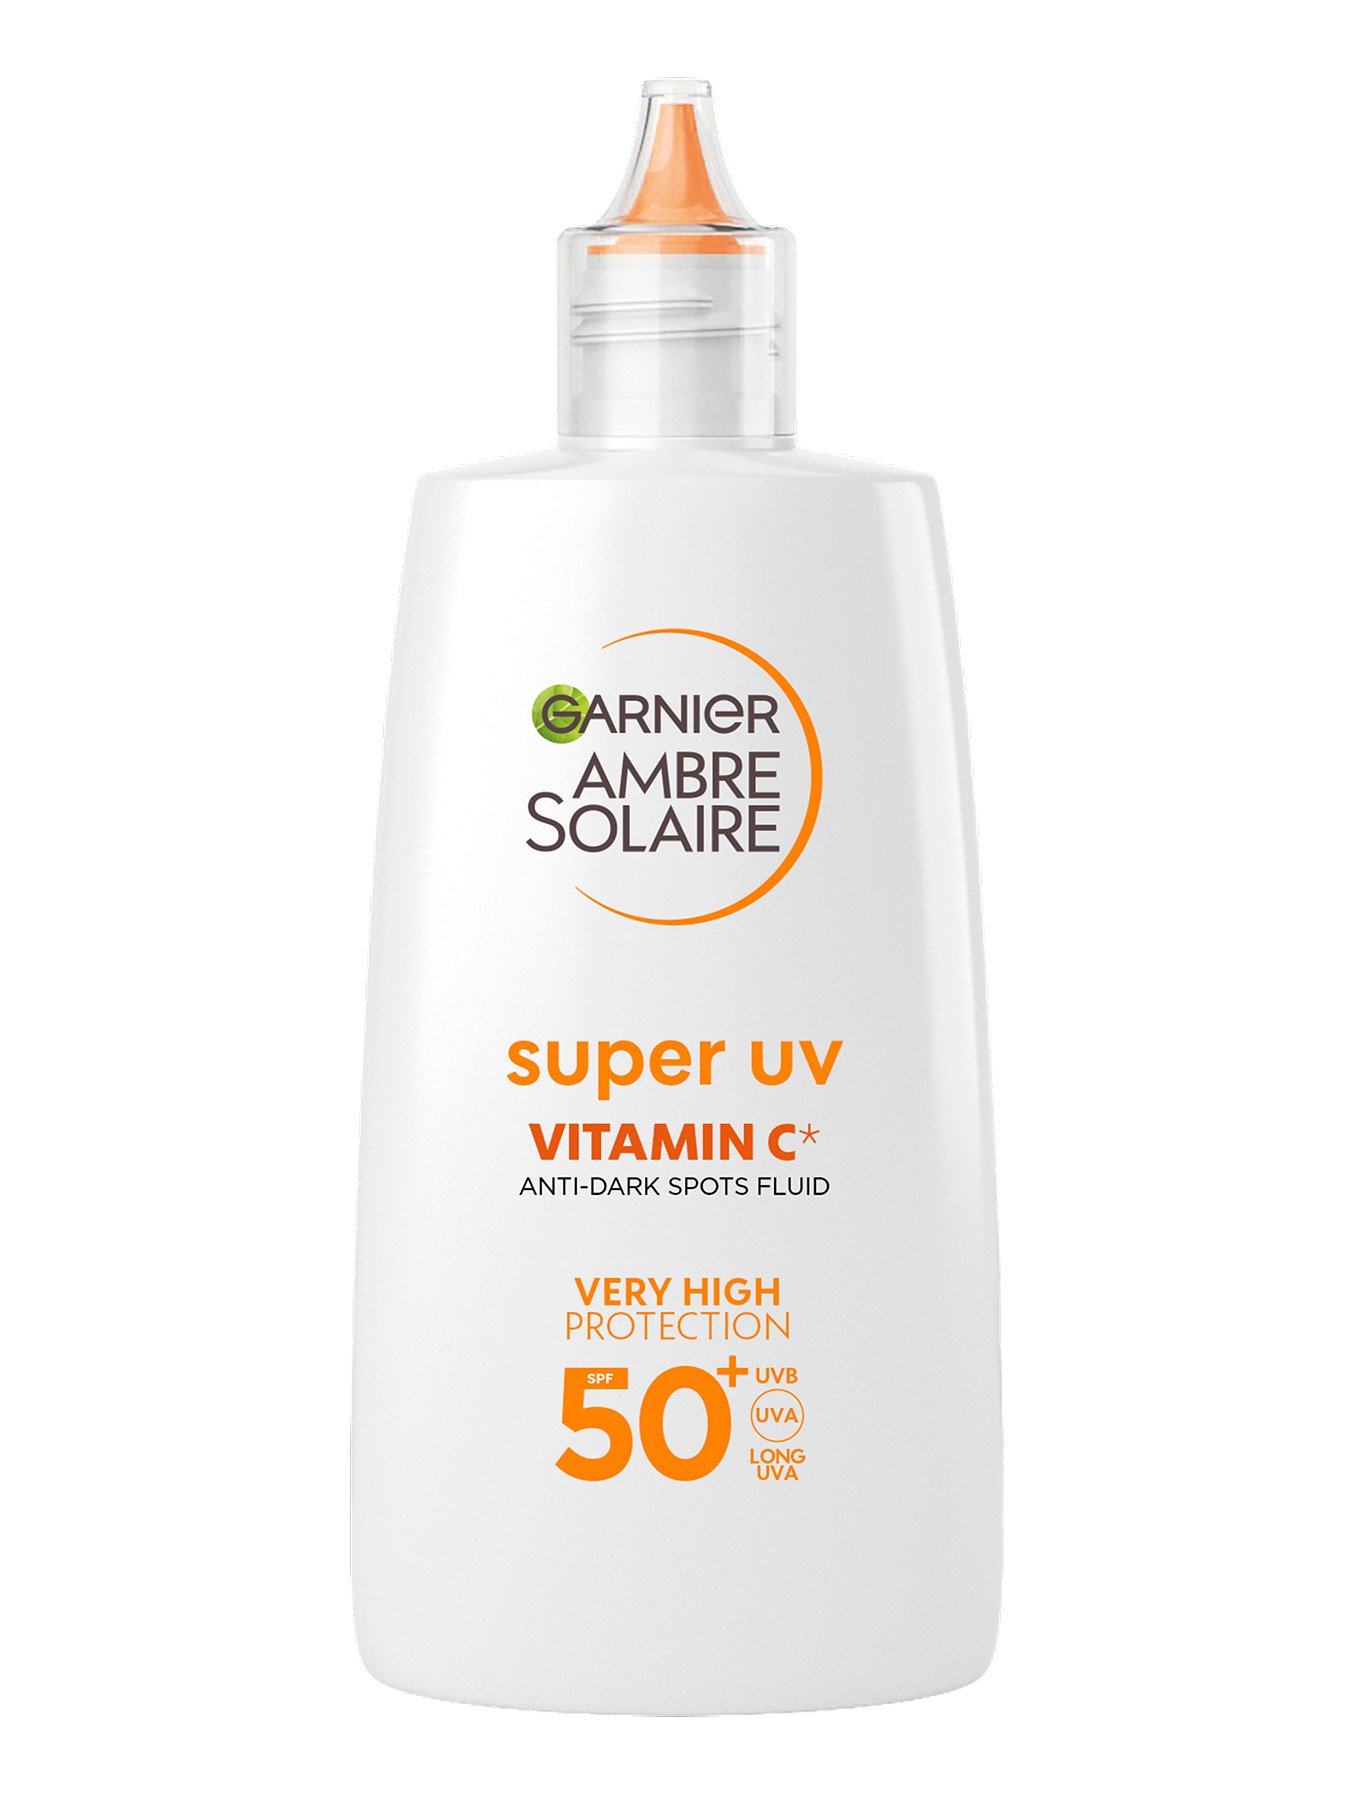 Garnier Ambre Solaire dnevni fluid zoper temne lise z vitaminom C*  in z zelo visoko zaštito SPF 50+